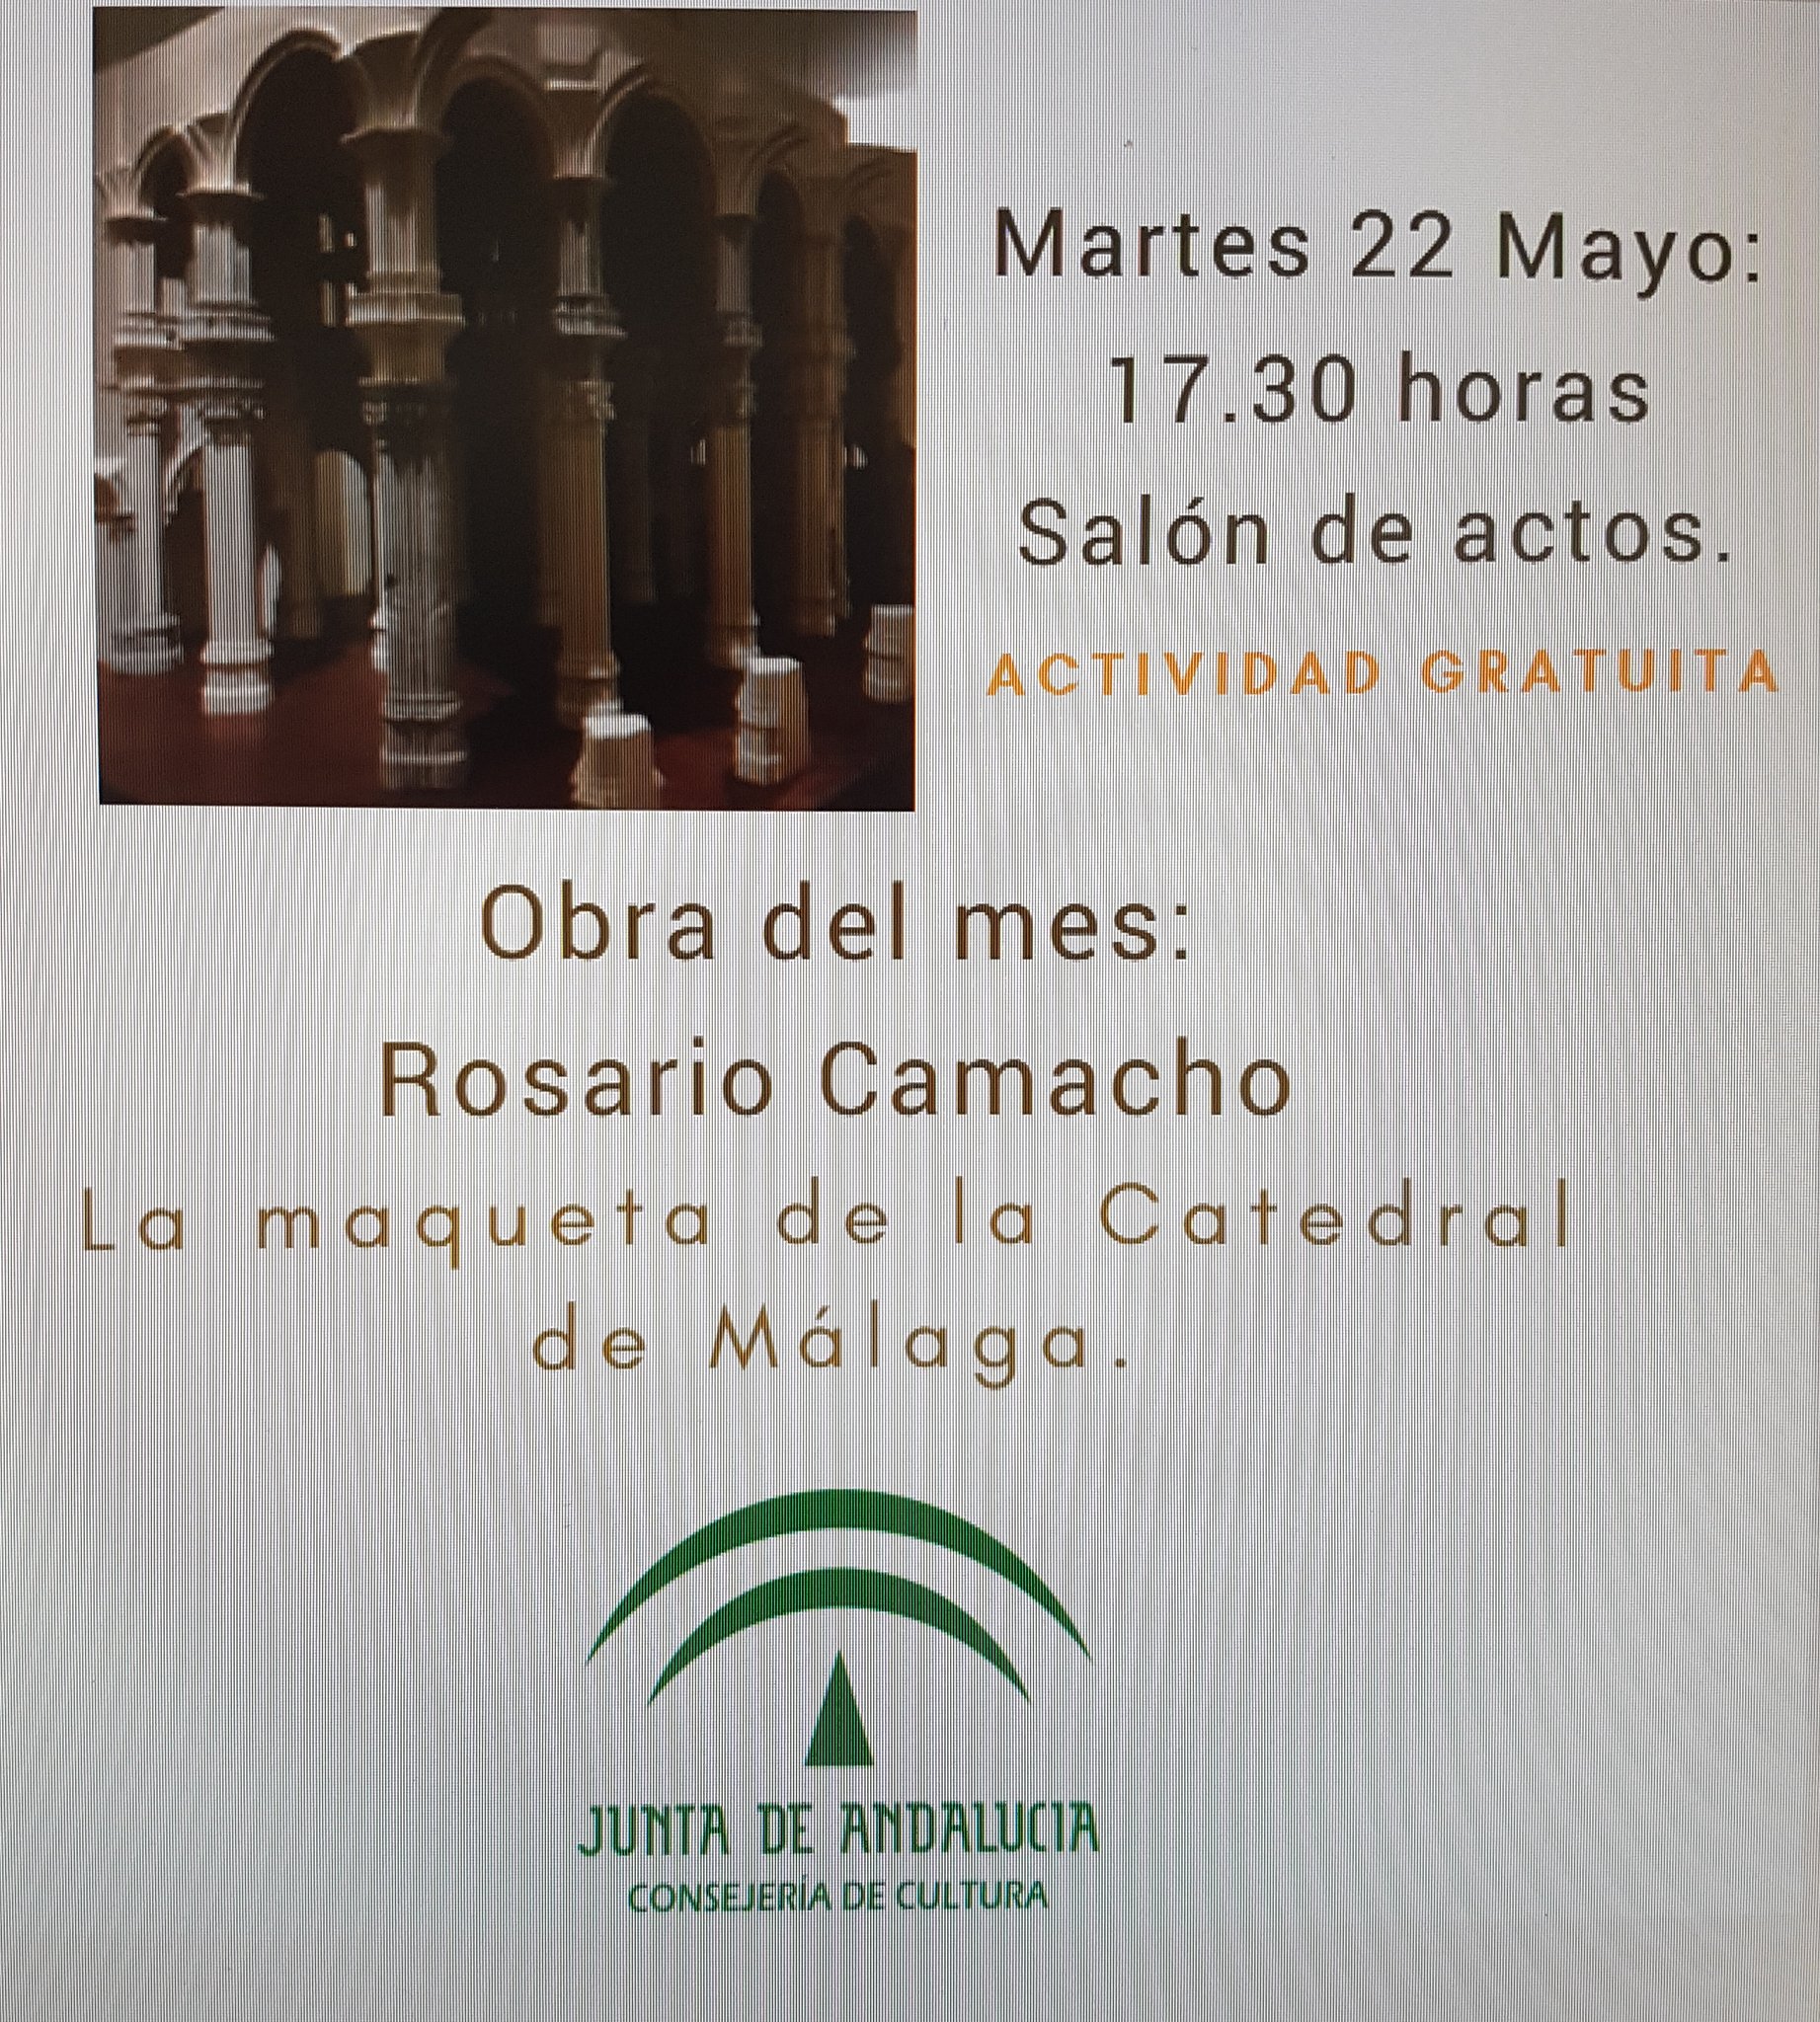 Un objeto encontrado revelador: la maqueta de la Catedral de Málaga